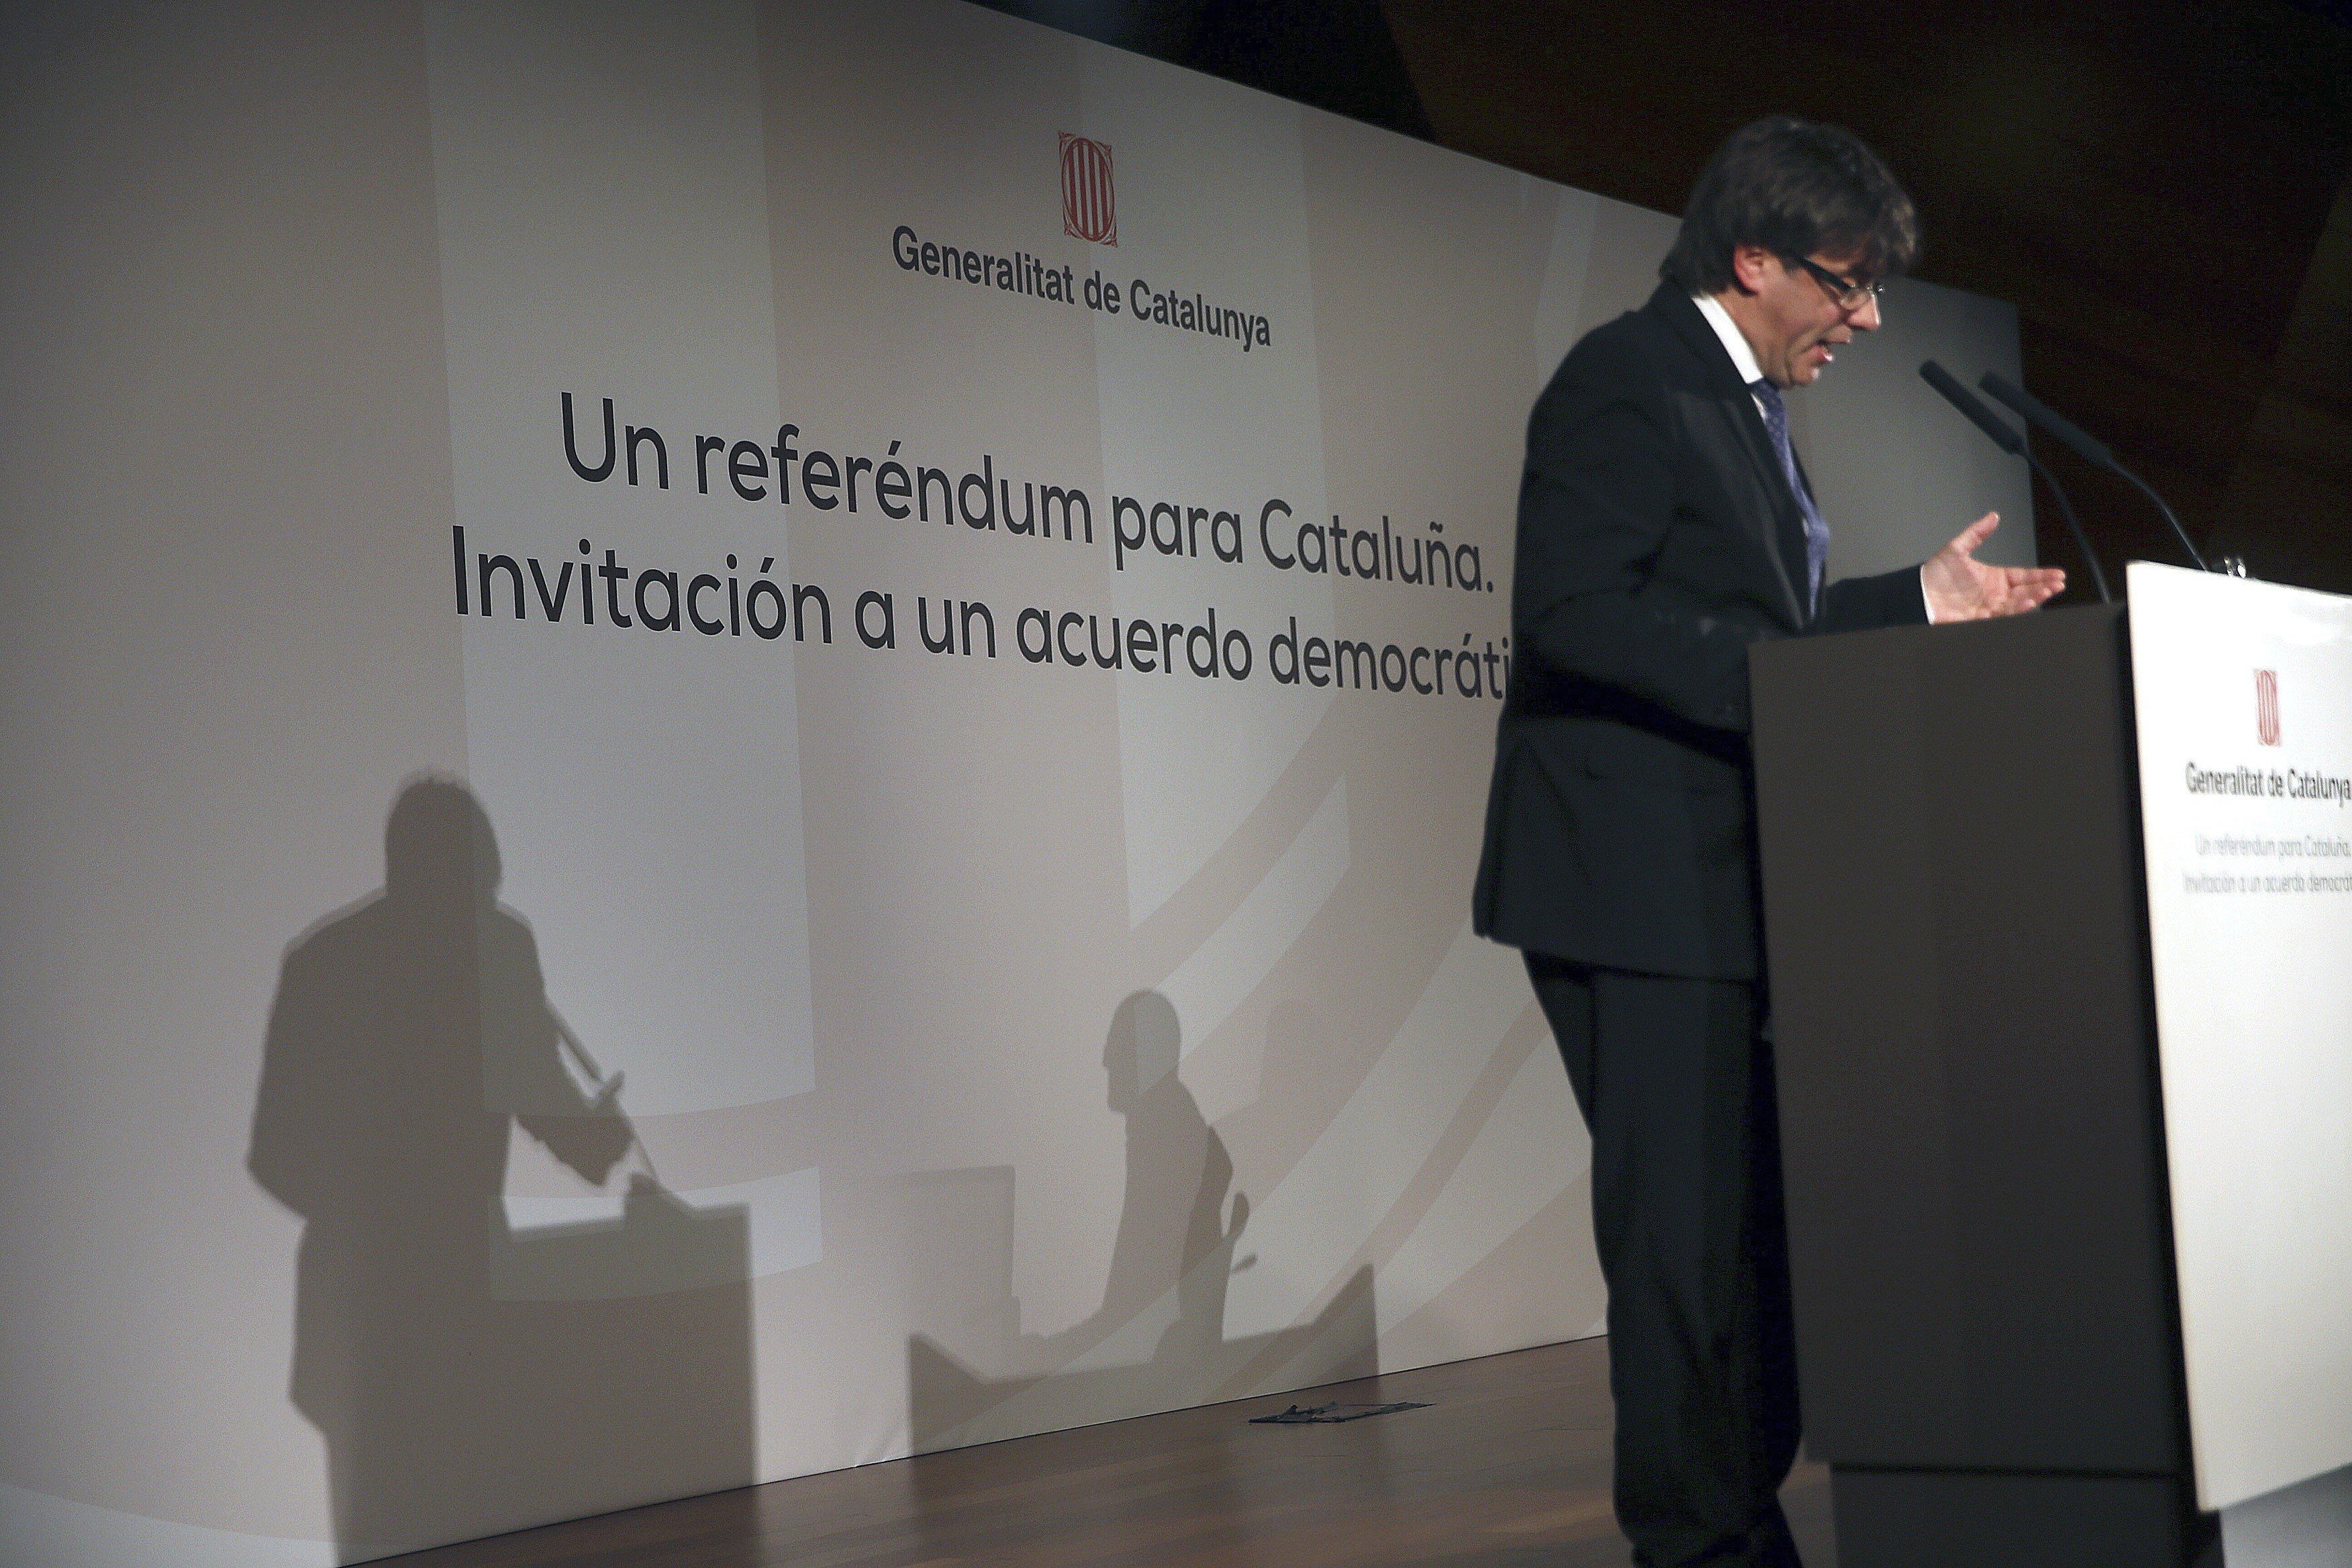 ¿Cómo ha tratado la prensa de Madrid la conferencia de Puigdemont?